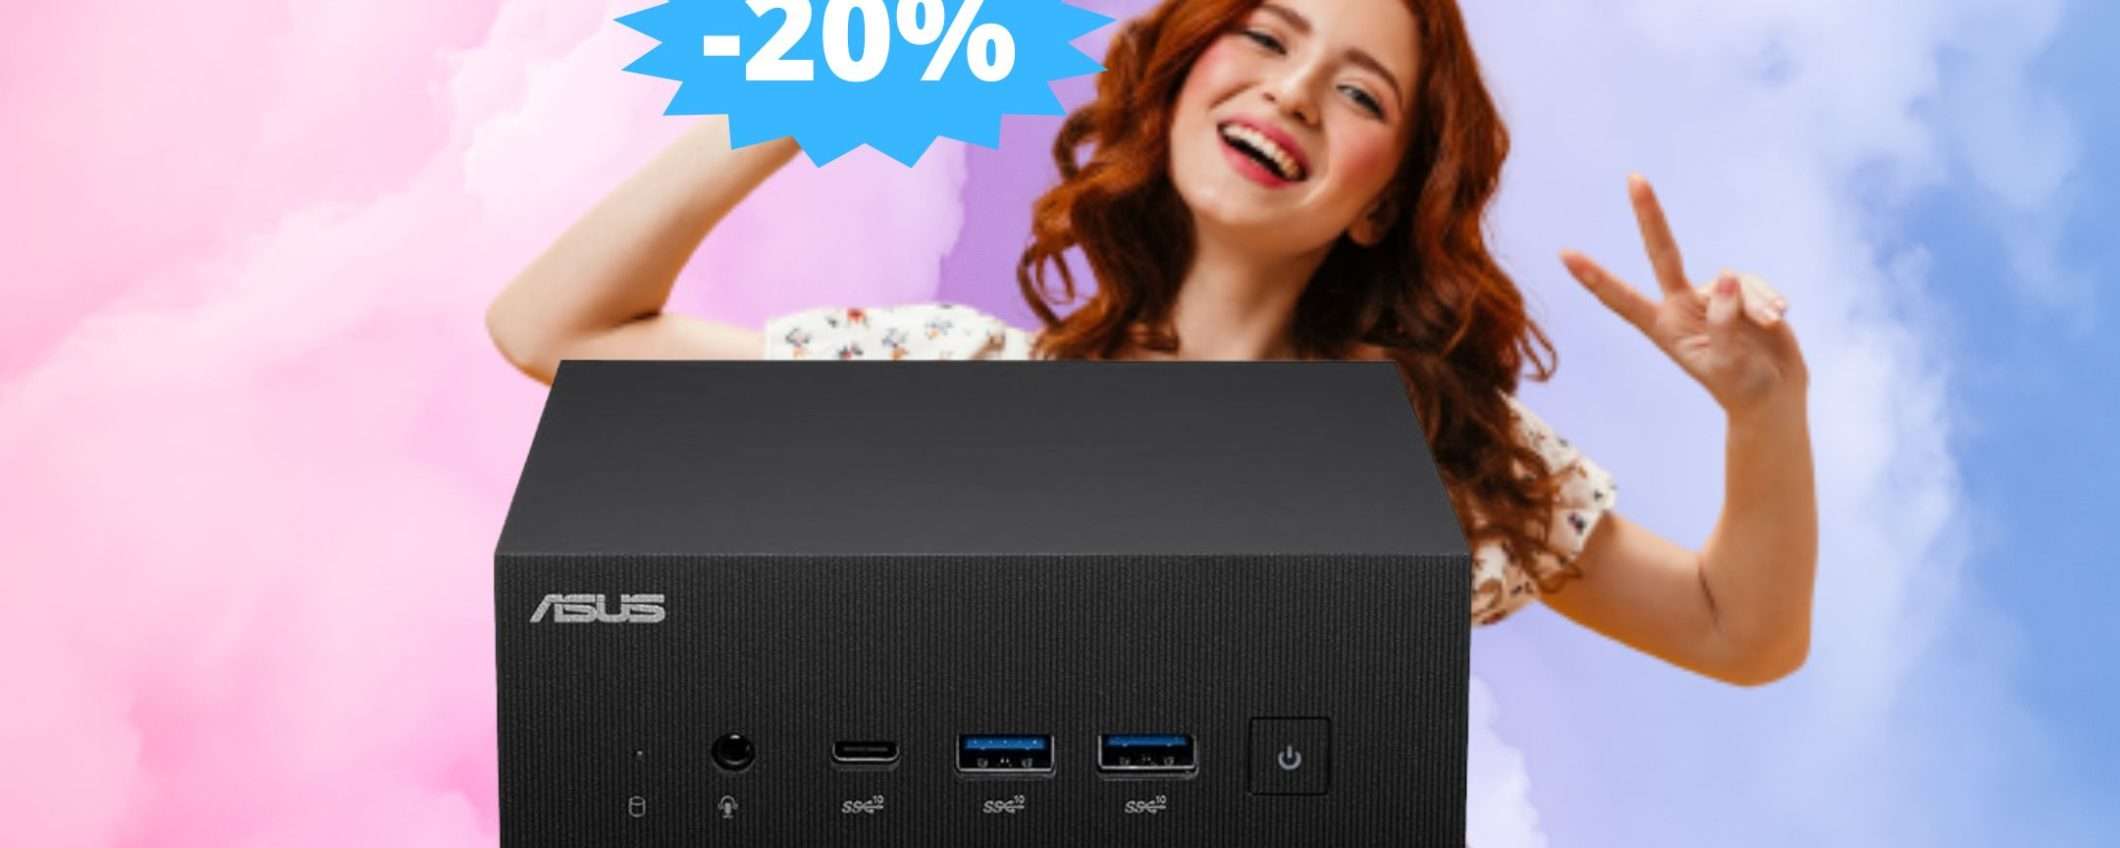 Mini PC ASUS PN64: SUPER sconto del 20% su Amazon